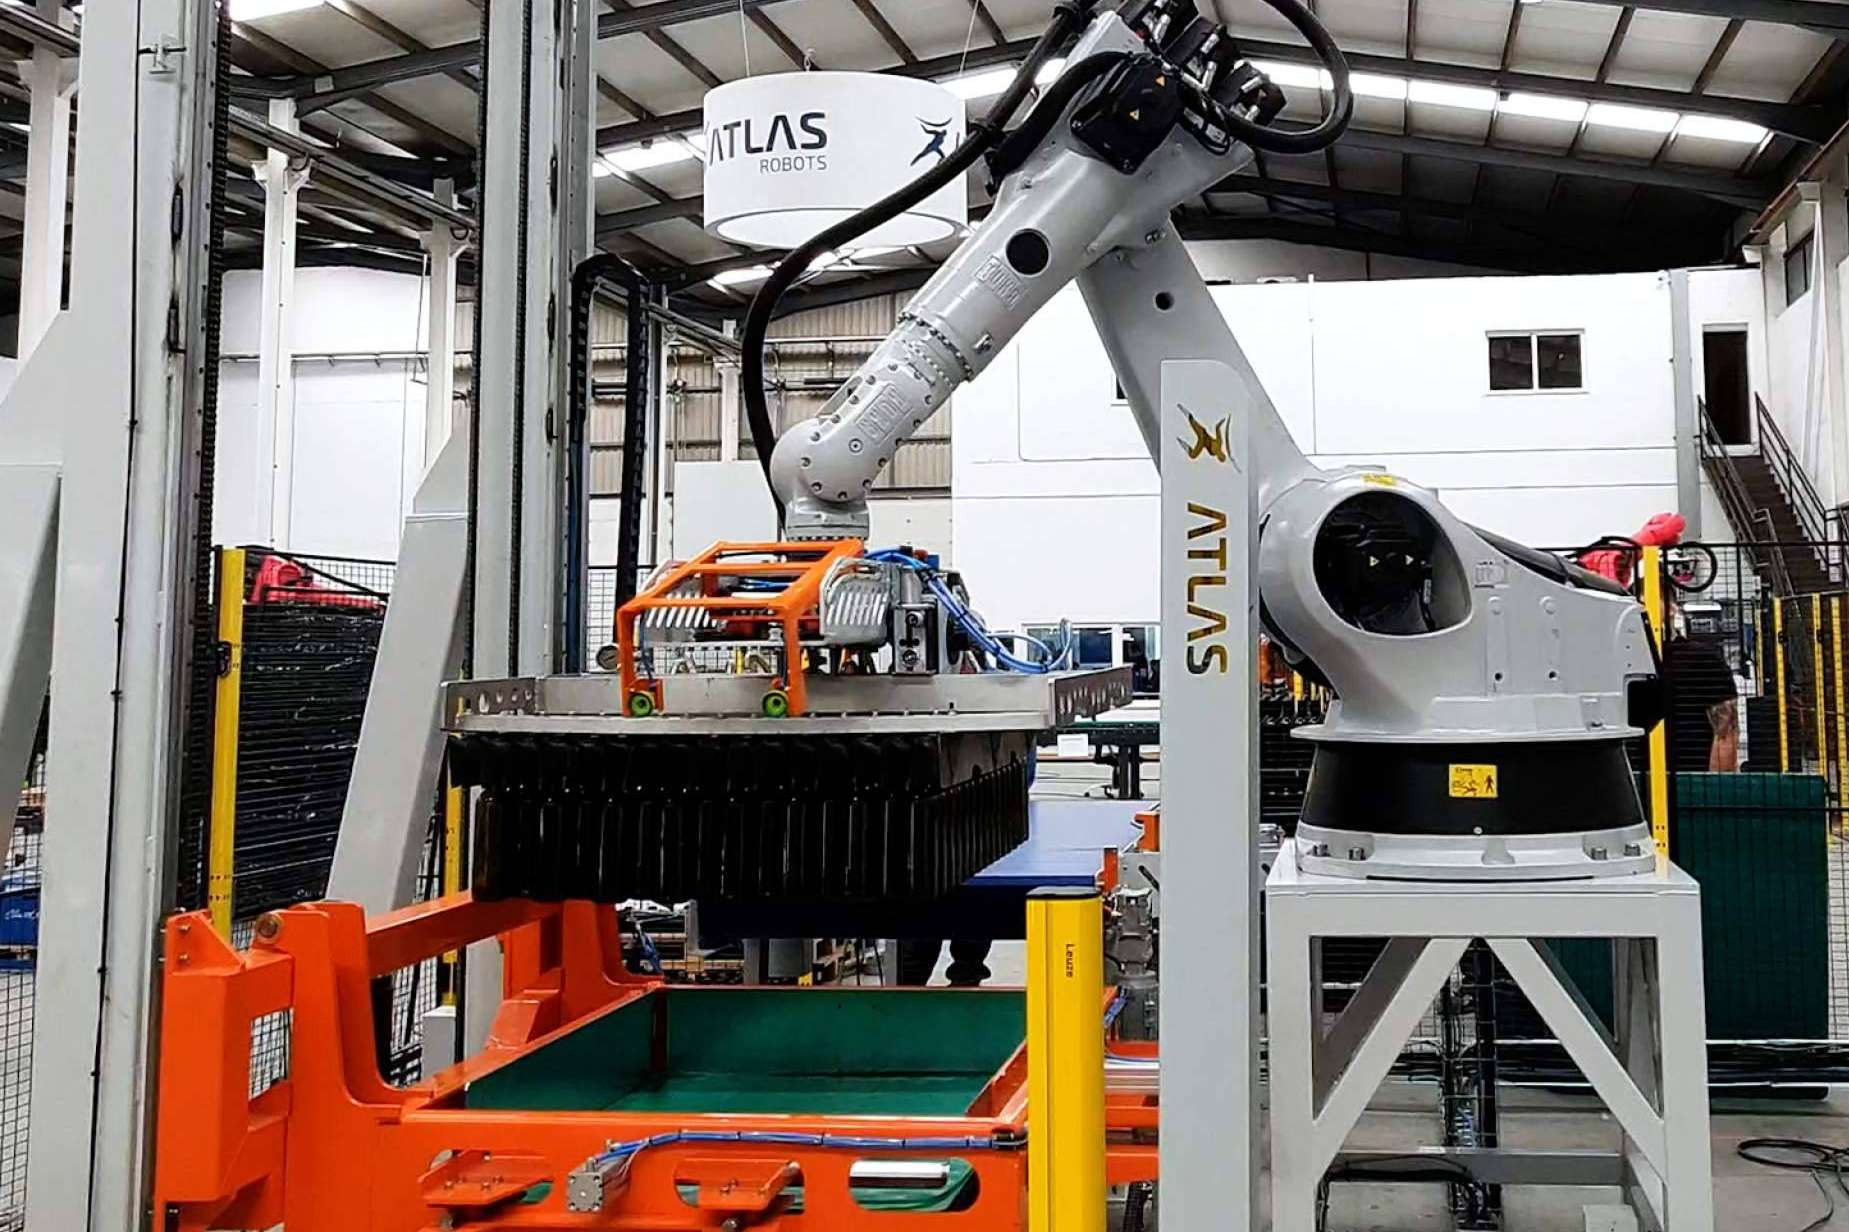  Revolución en la Industria; El Nuevo Robot de Atlas Robots Mueve hasta 200,000 Botellas por Turno 